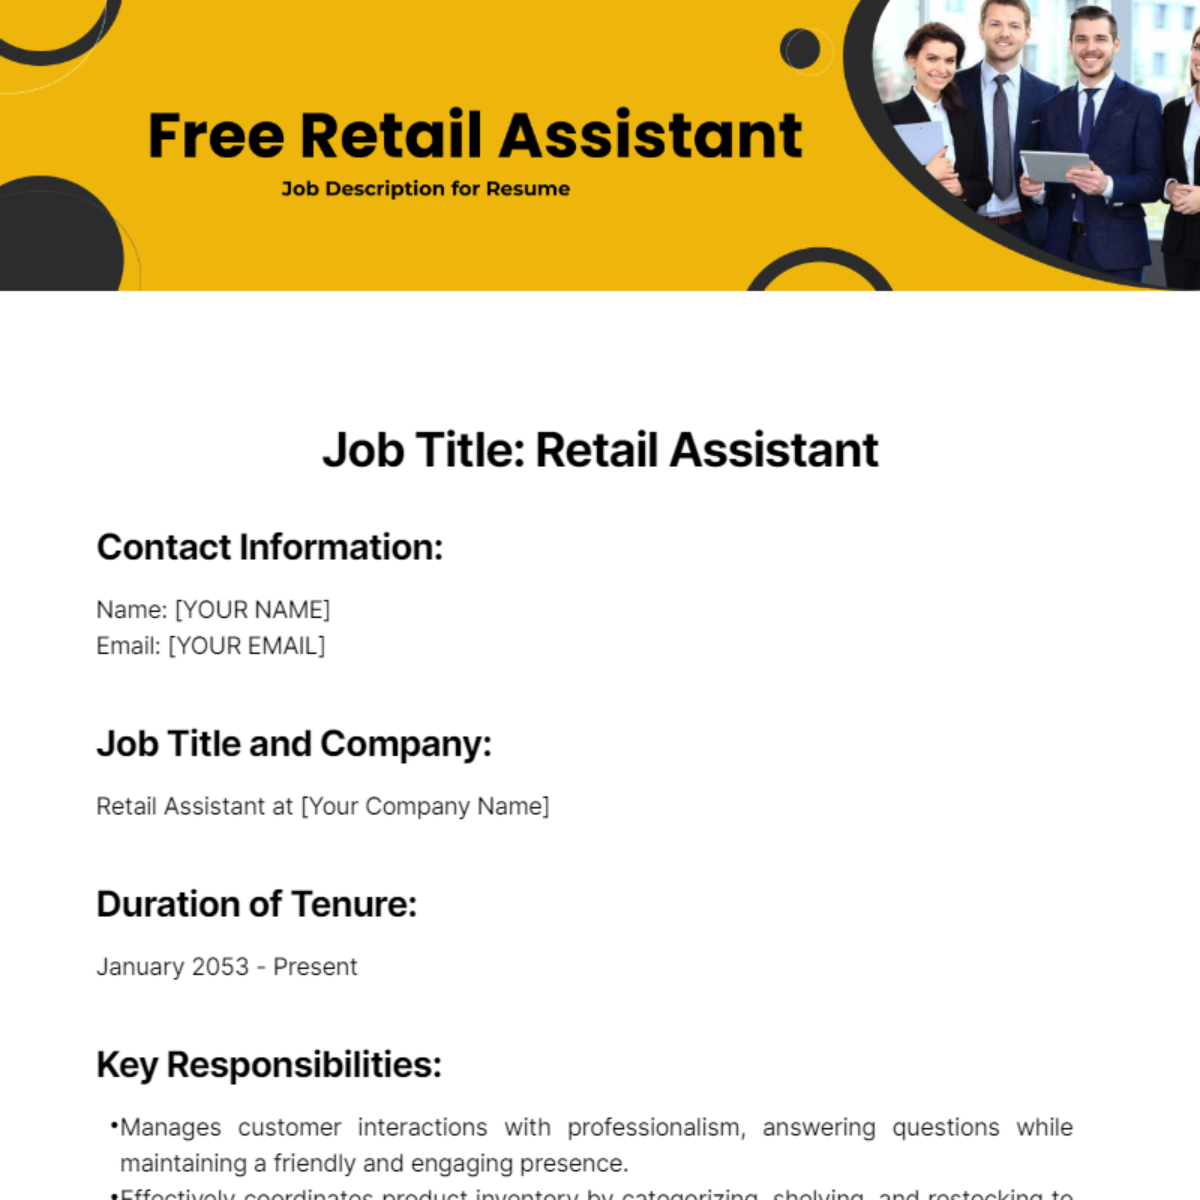 Retail Assistant Job Description for Resume Template